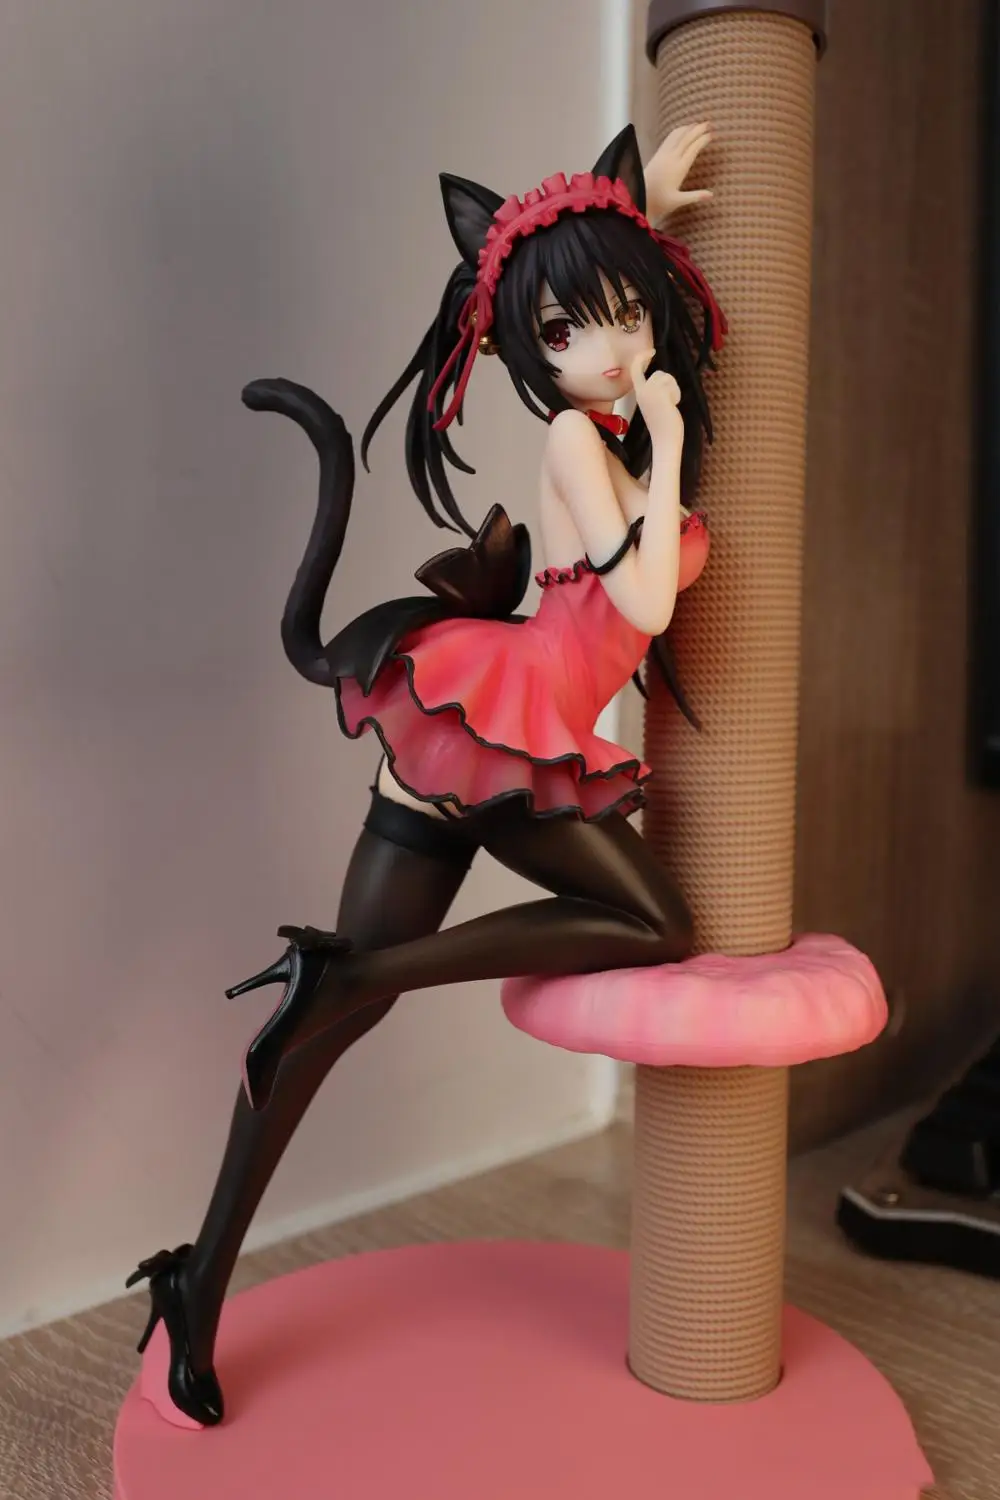 Anime FECHA en que VIVEN ⅱ Pesadilla Kurumi Tokisak Alphamax LUNA amiami Conejito Sexy Chica de PVC Figura de Acción de Juguete Adulto Coleccionables Modelo 4